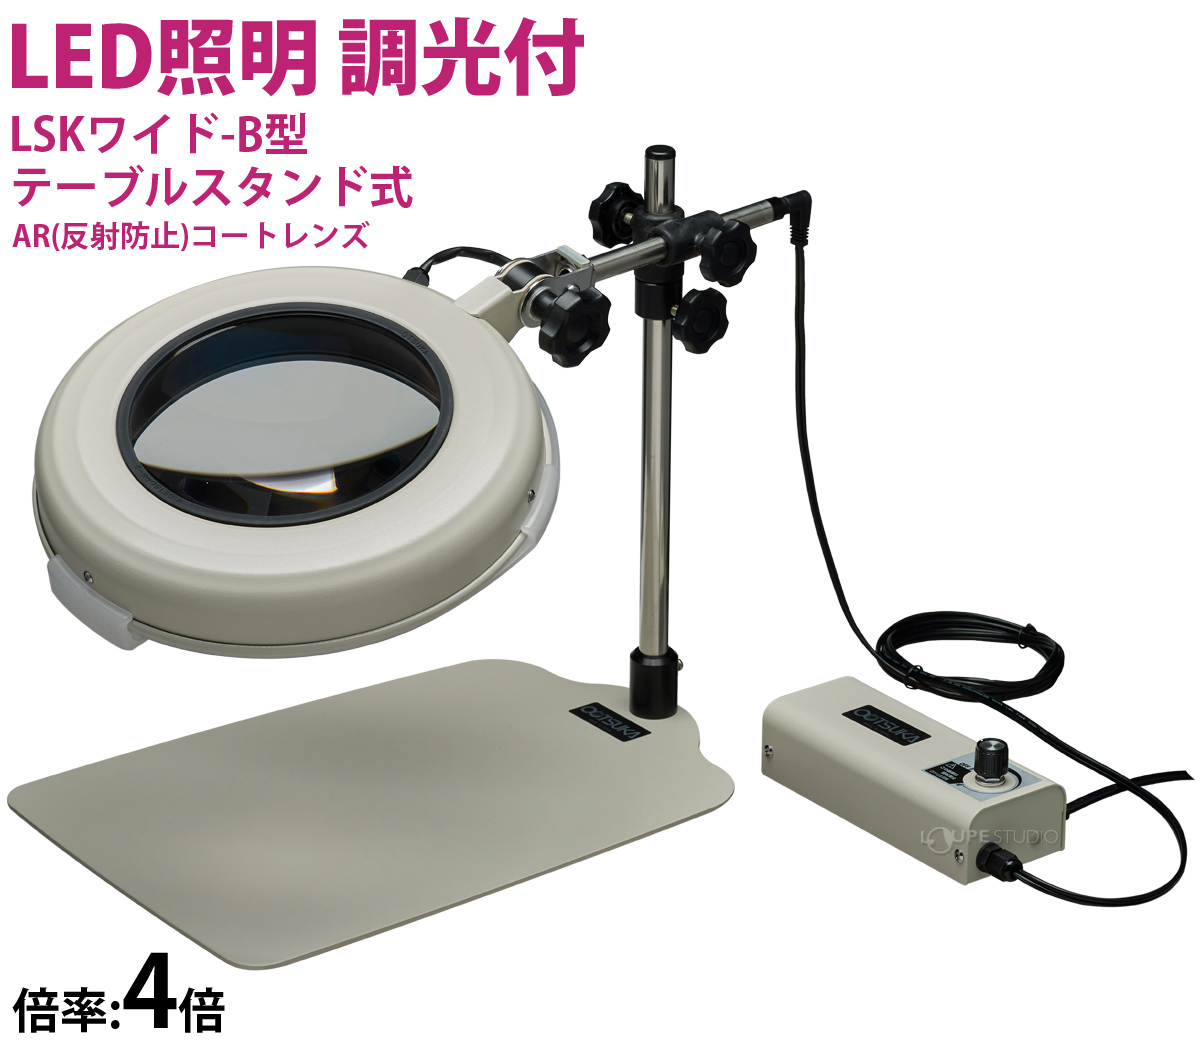 オーツカ光学 (OOTSUKA) LED照明拡大鏡・調光なし SKKL-F ラウンド2倍 (SKKL-F-2) (フリーアーム式) 通販 